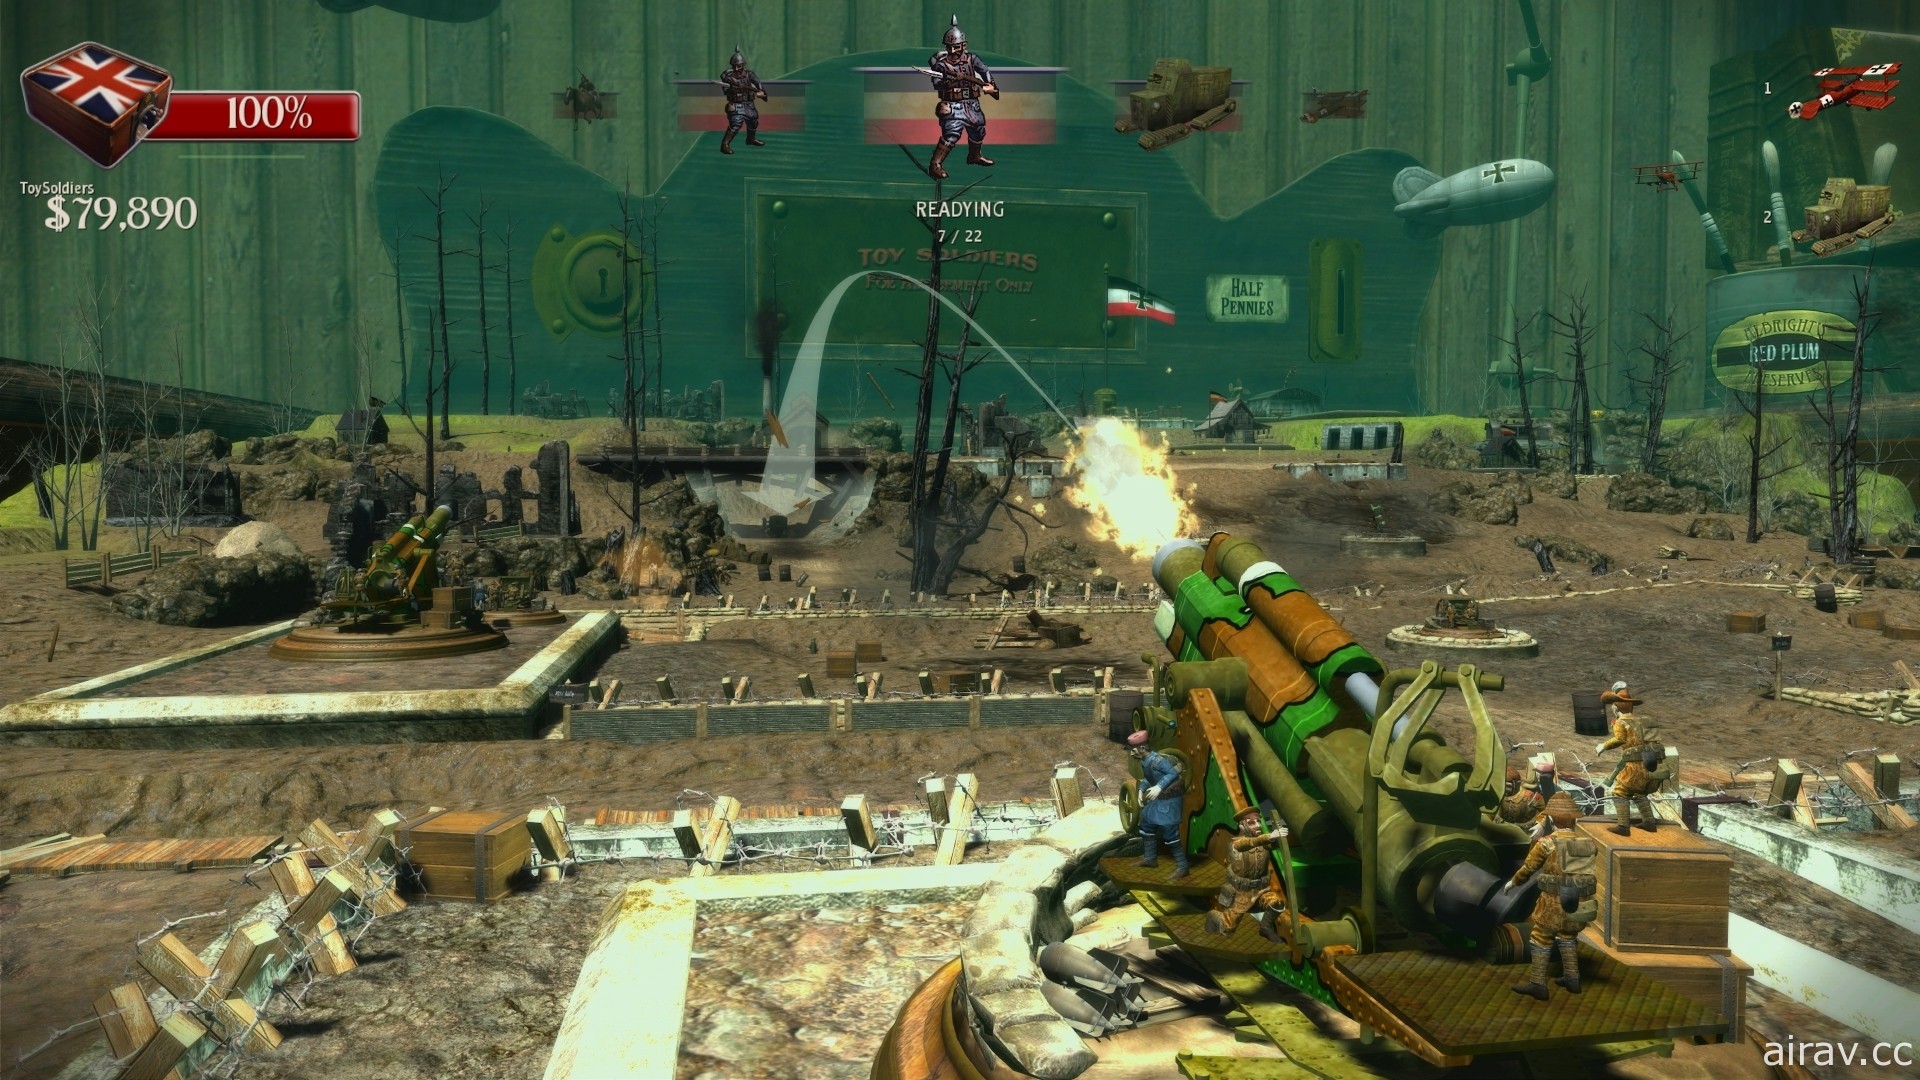 2010 年作品翻新遊戲《玩具兵團 HD》上市 指揮整個戰場與作戰單位